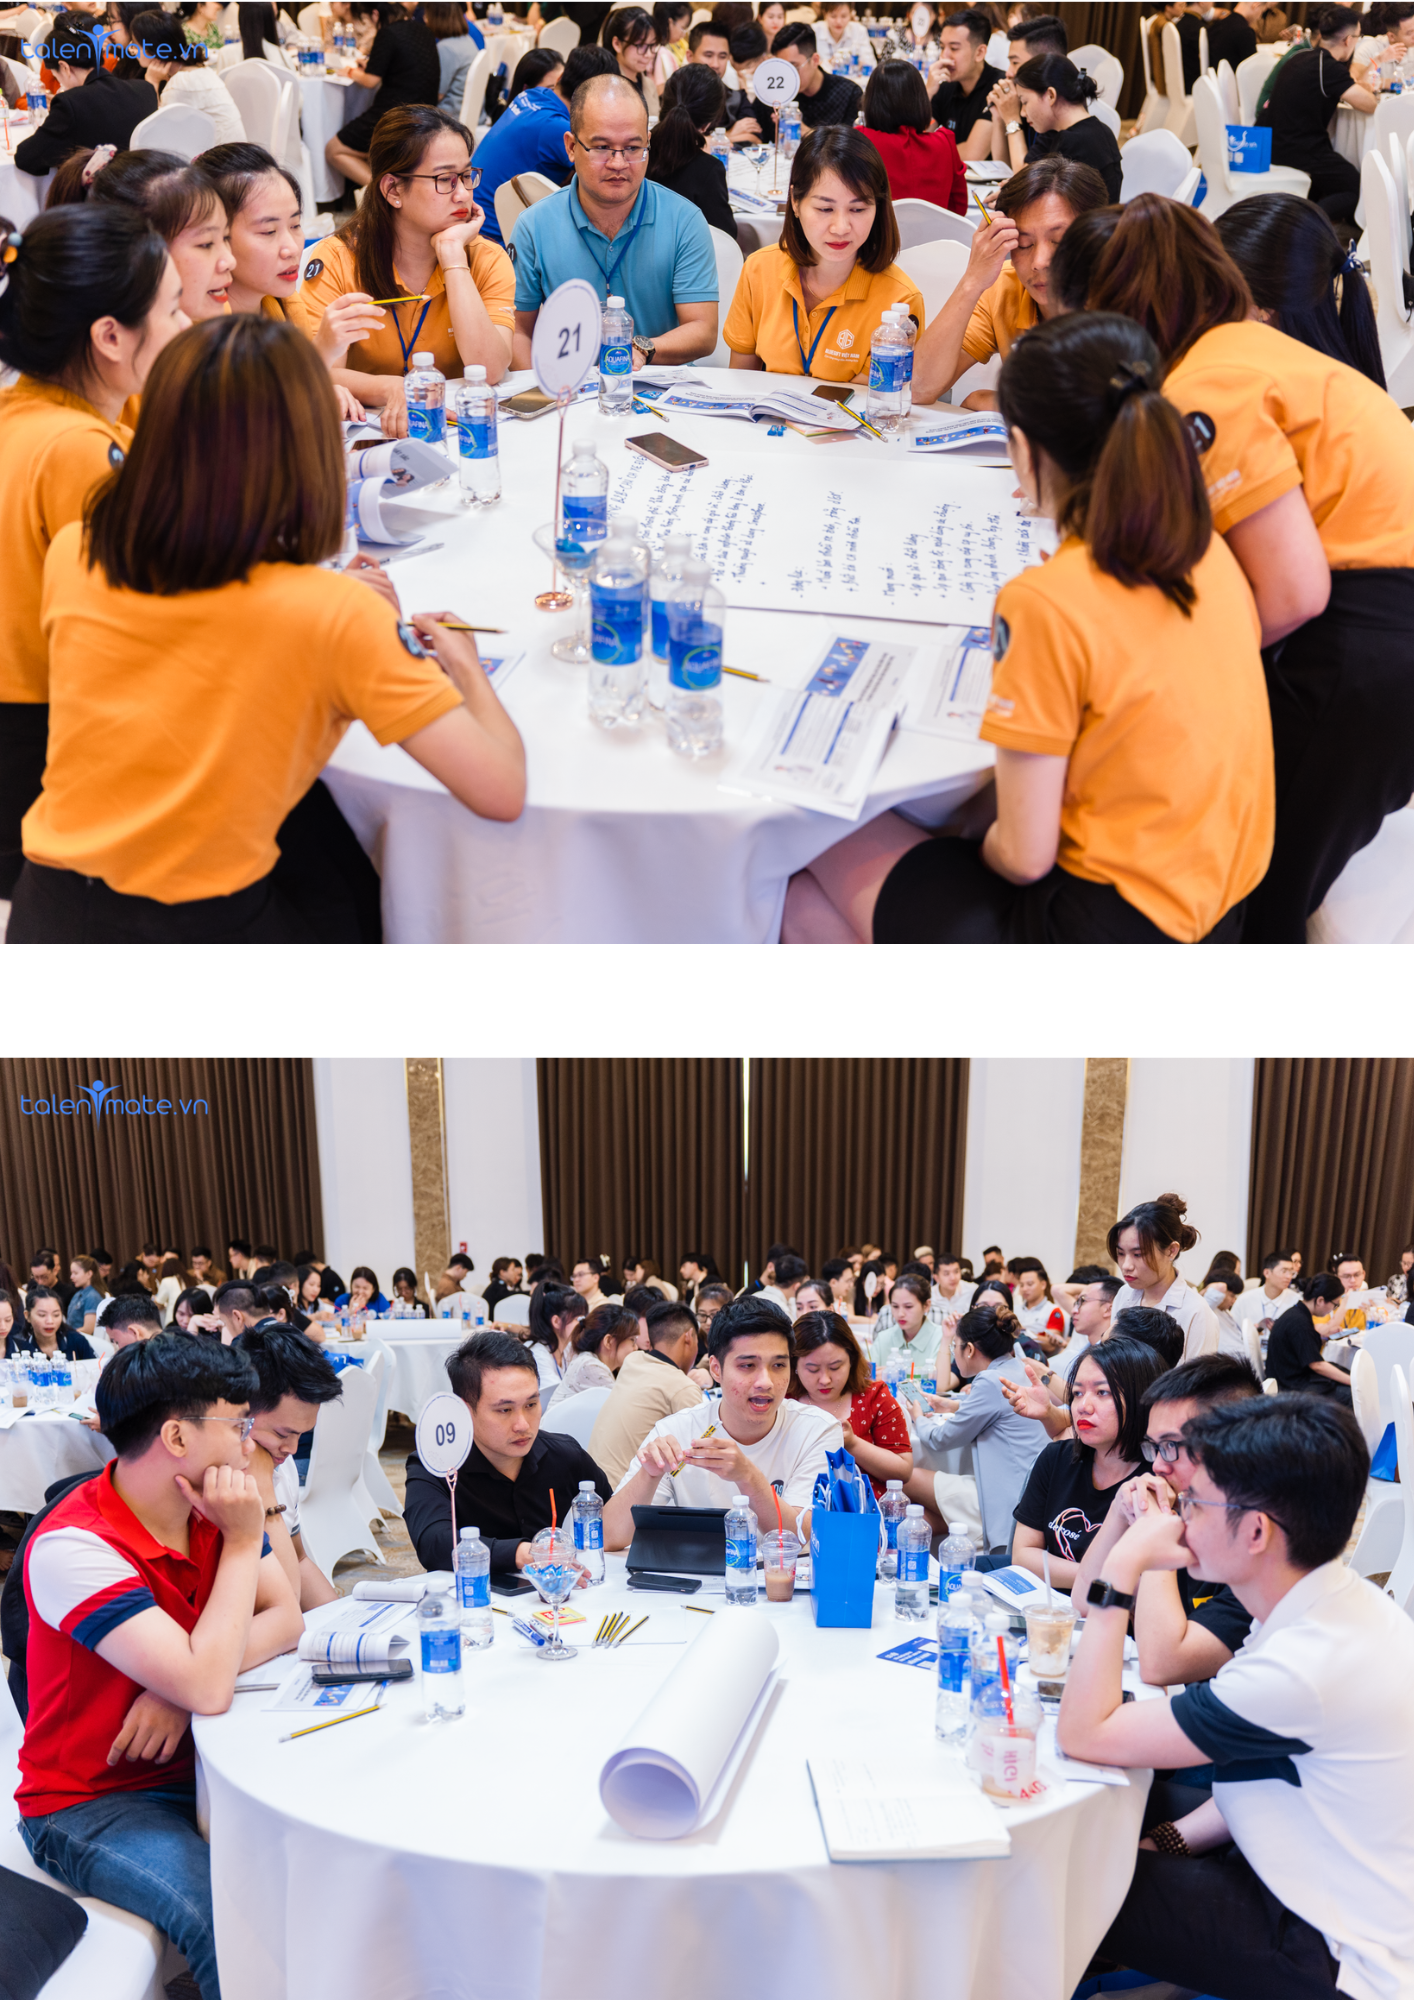 Talentmate ghi dấu với event Trải nghiệm khách hàng cùng chuyên gia Nguyễn Dương - Ảnh 4.